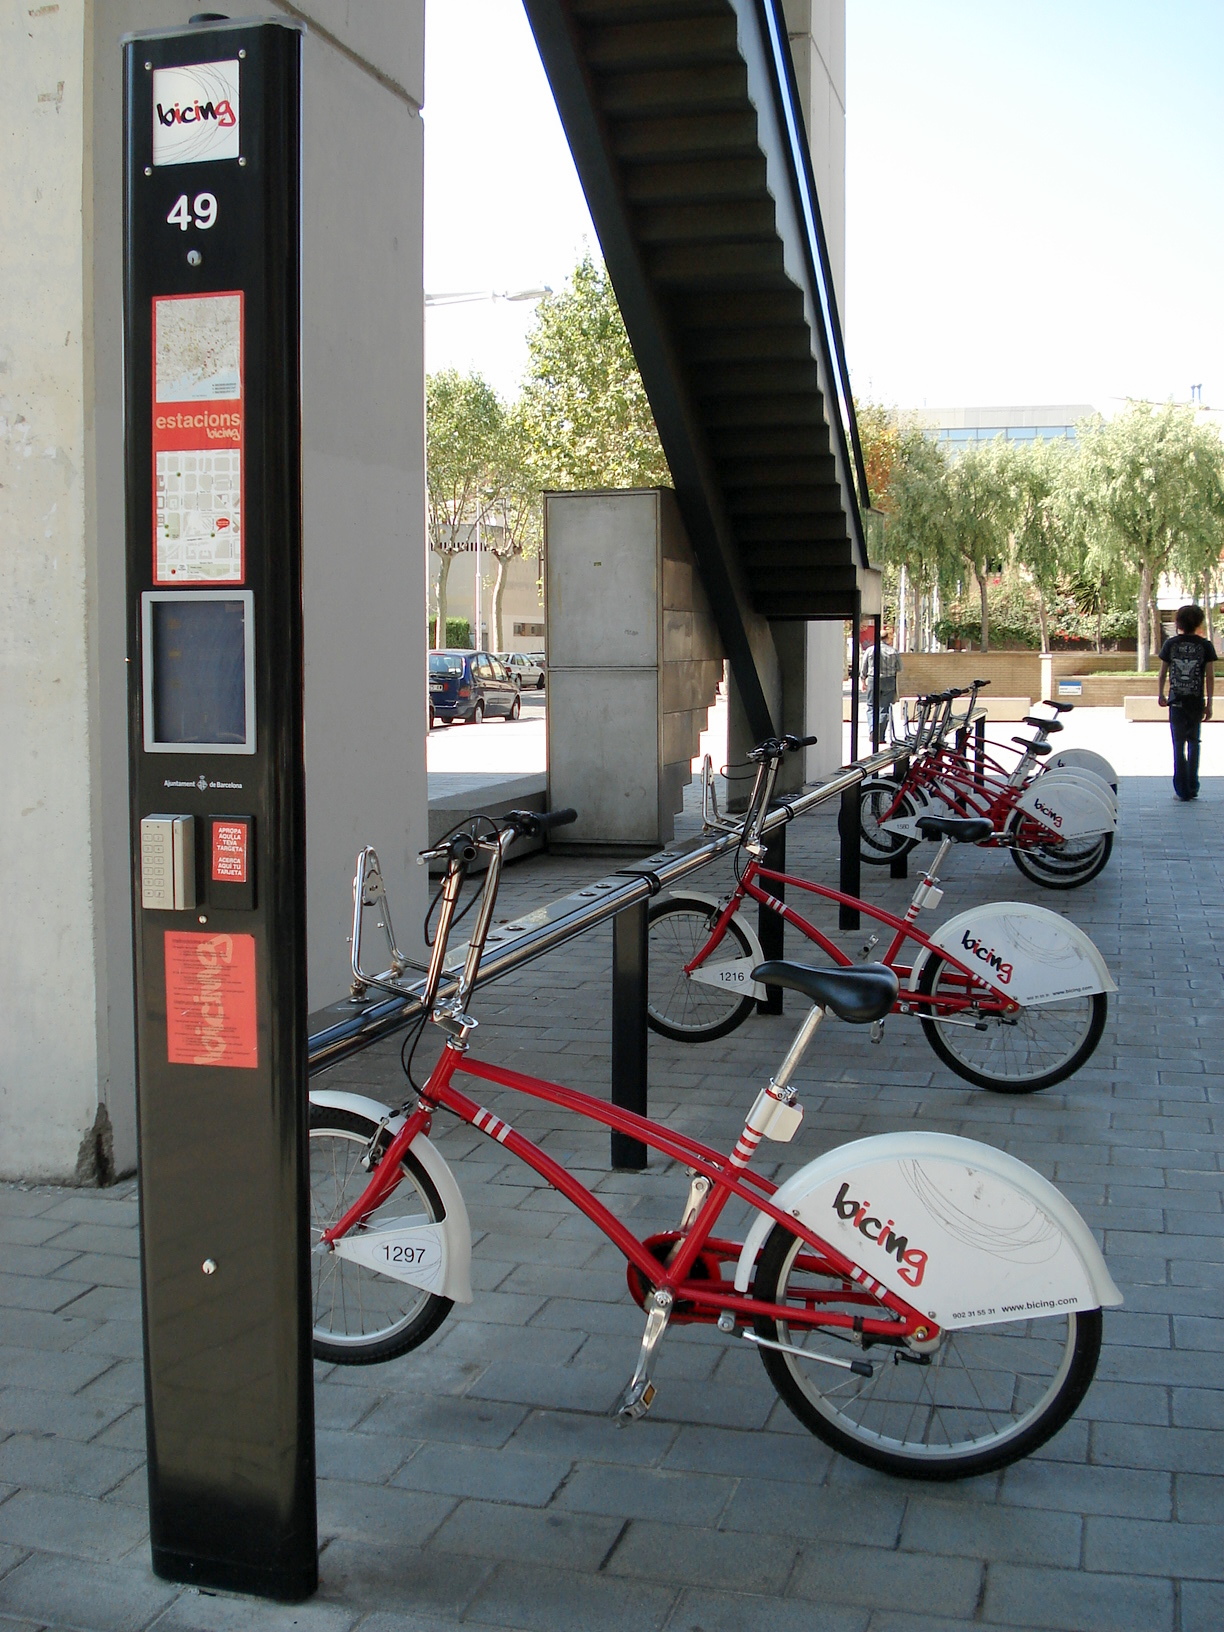 Alquiler de bicis. El bicing de Barcelona. Fuente: wikipedia.org.